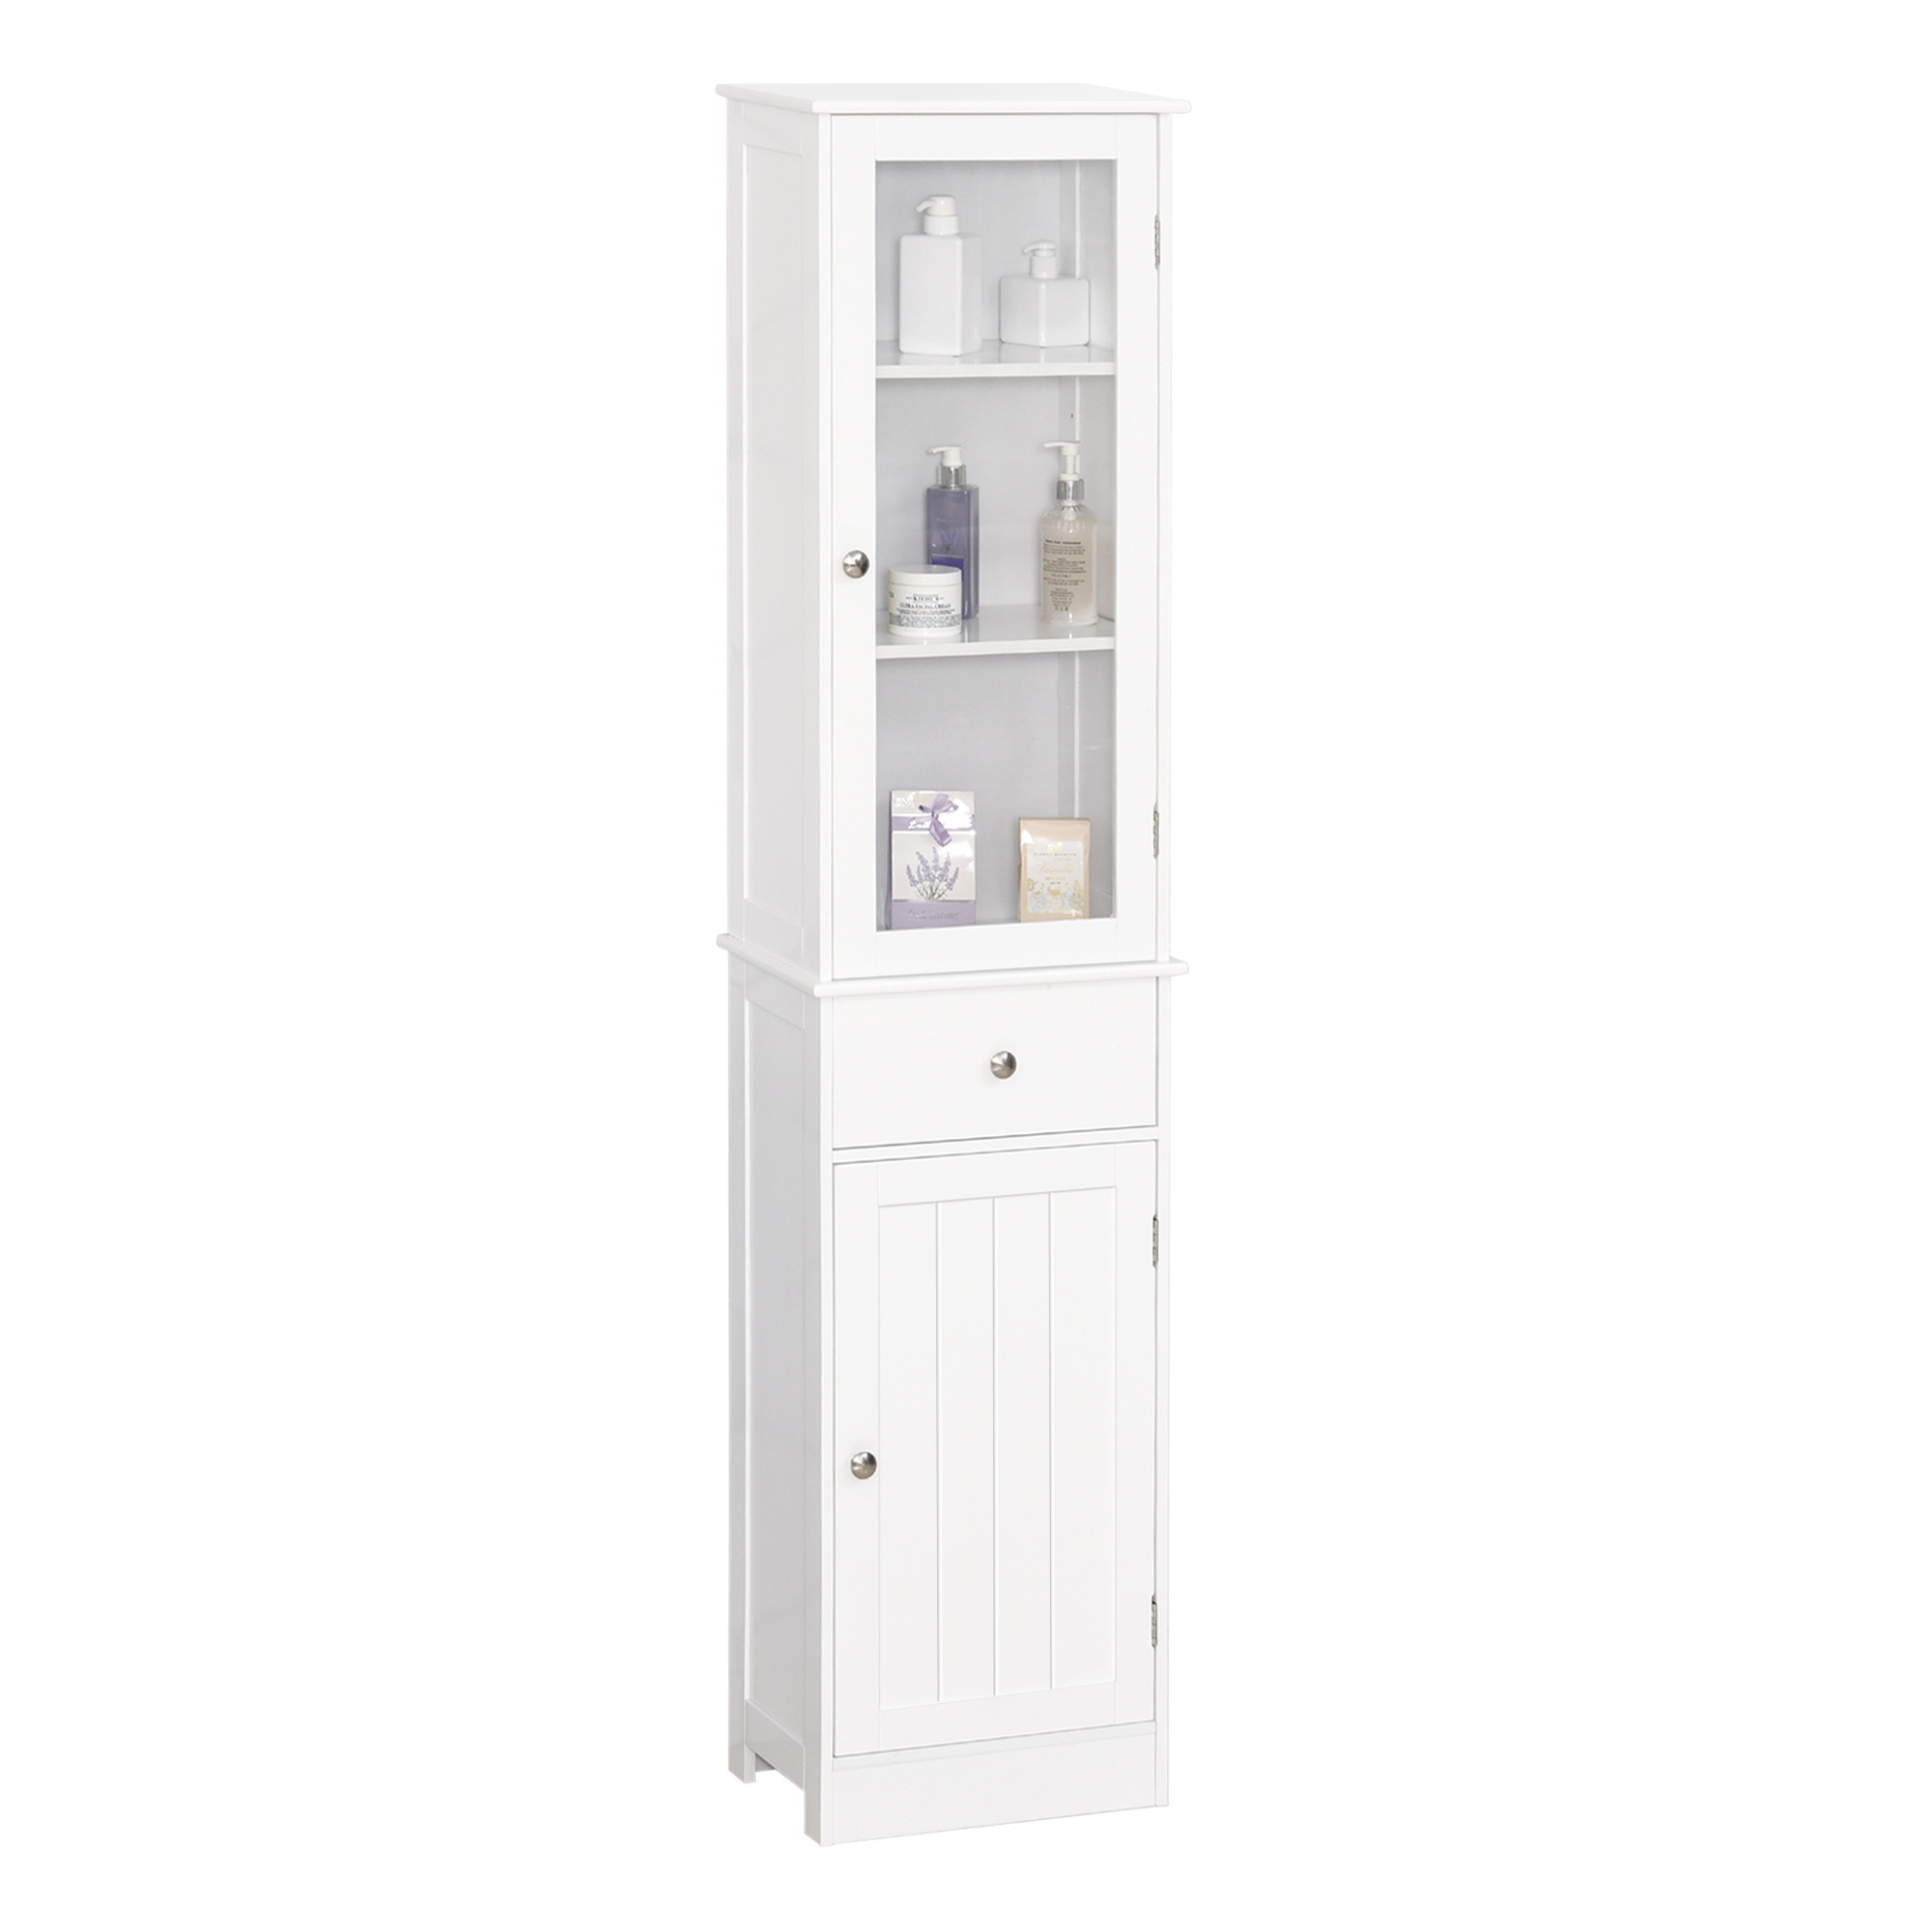 kleankin Bathroom Storage Cabinet with 3-tier Shelf Drawer Door, Floor Cabinet Free Standing Tall Slim Side Organizer Shelves, White